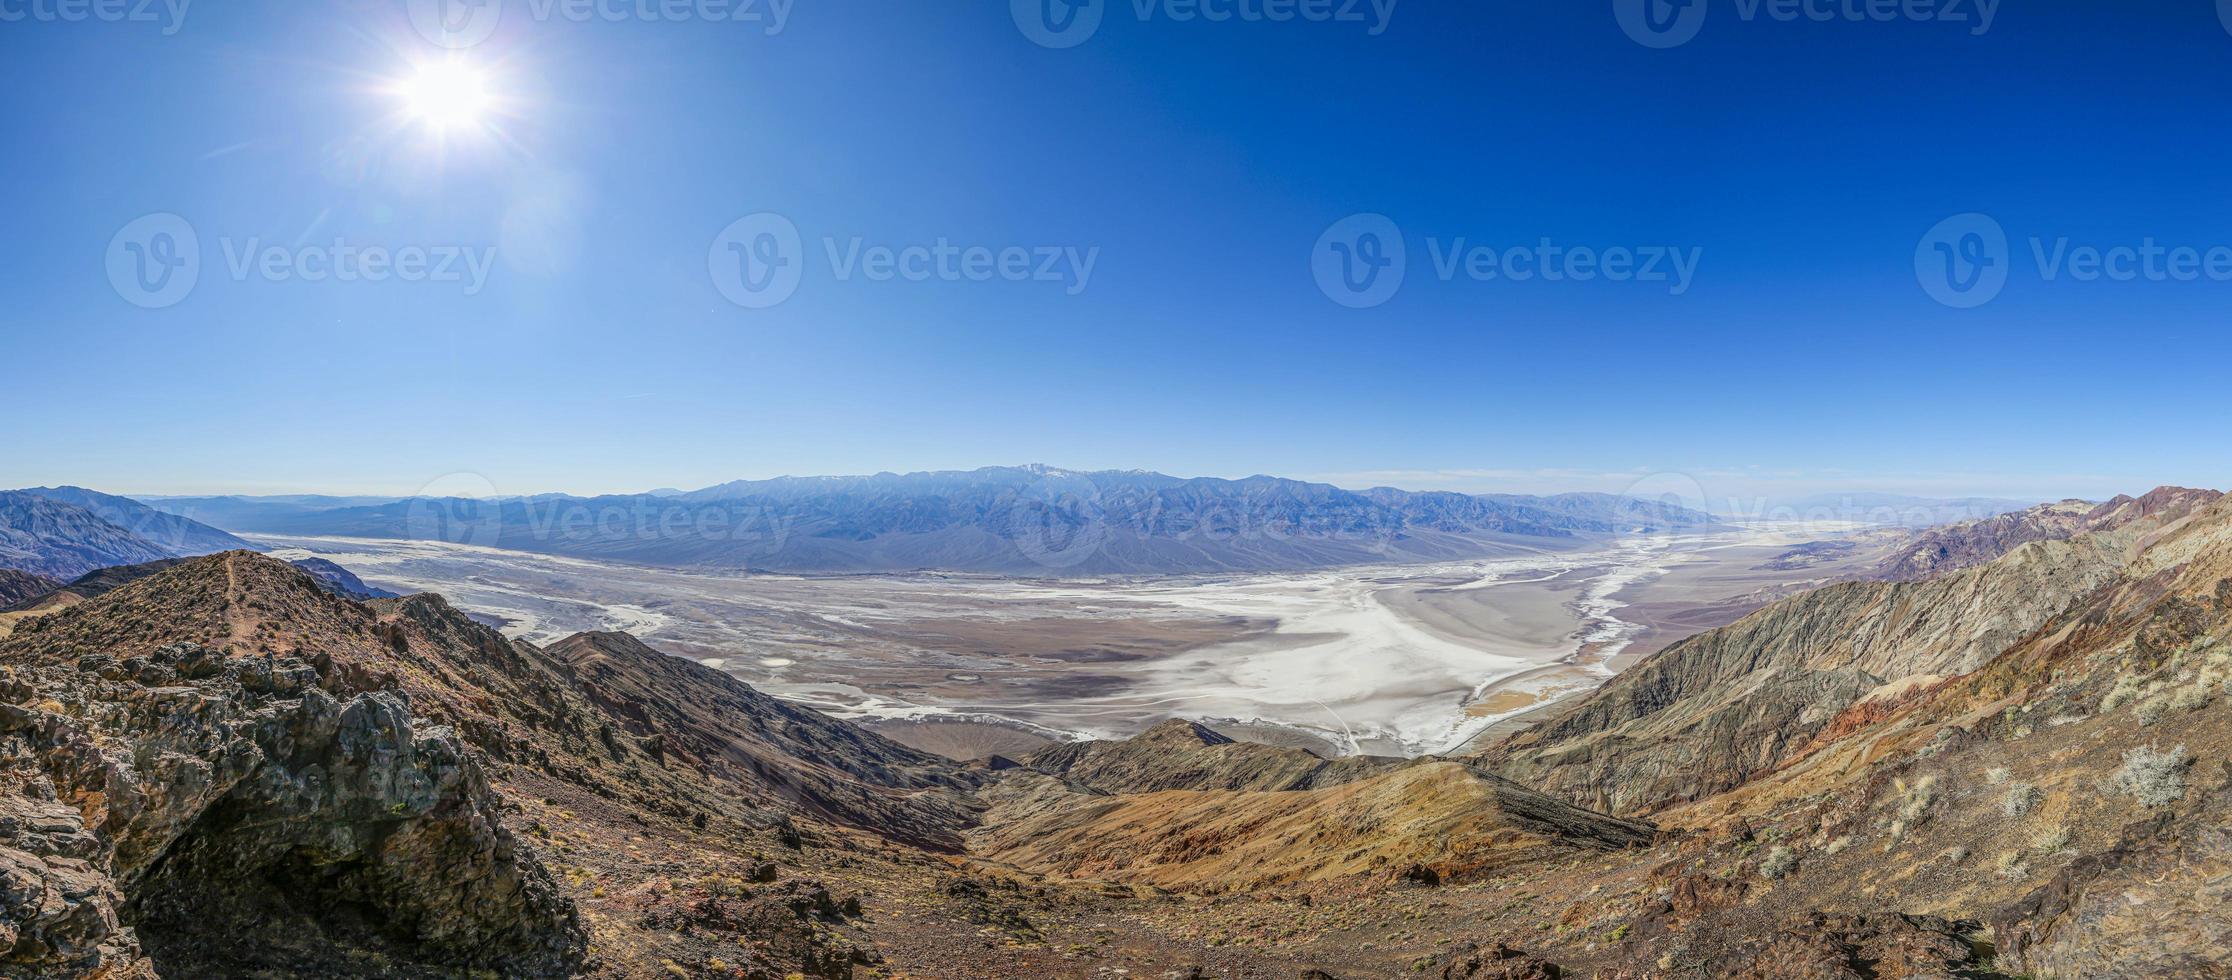 panorama- bild över död dal från dantes synpunkt i vinter- foto